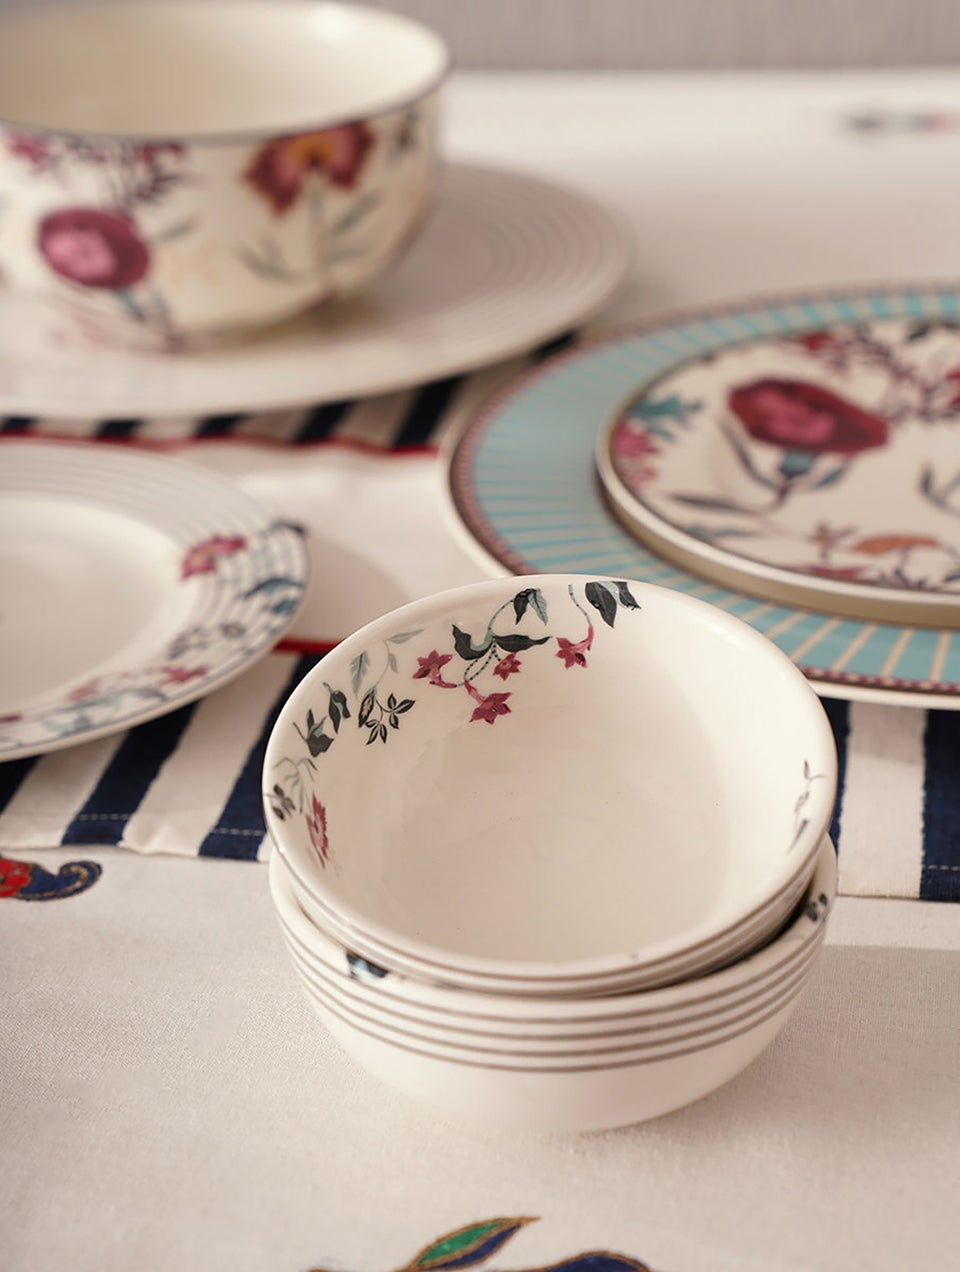 Mughal Inspired Porcelain Bowls